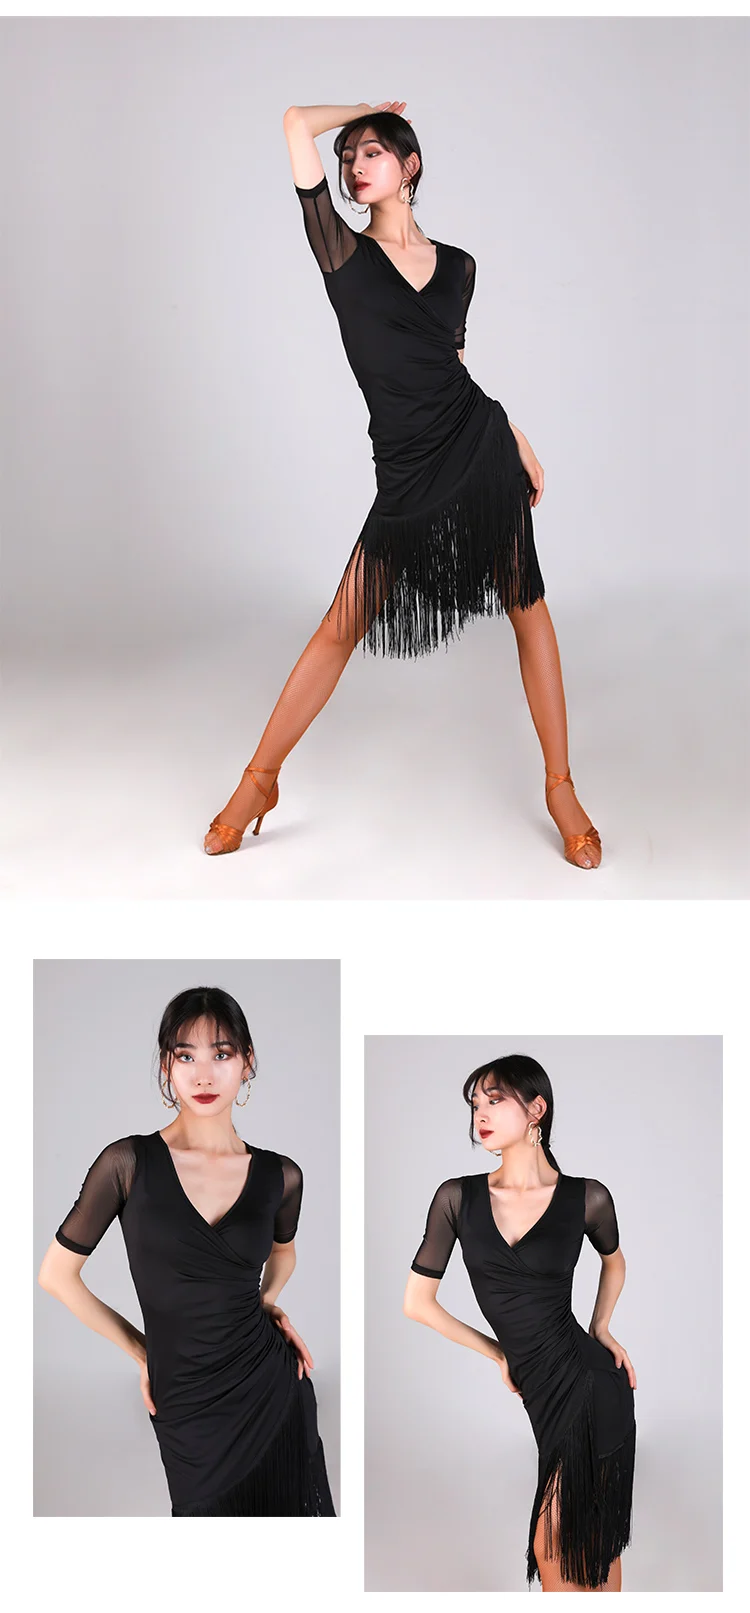 Новое платье для латинских танцев, женское платье, Одежда для танцев, сексуальное платье с бахромой, стандартное платье для румбы, платье для выступлений, платья для латинских танцев BL2453